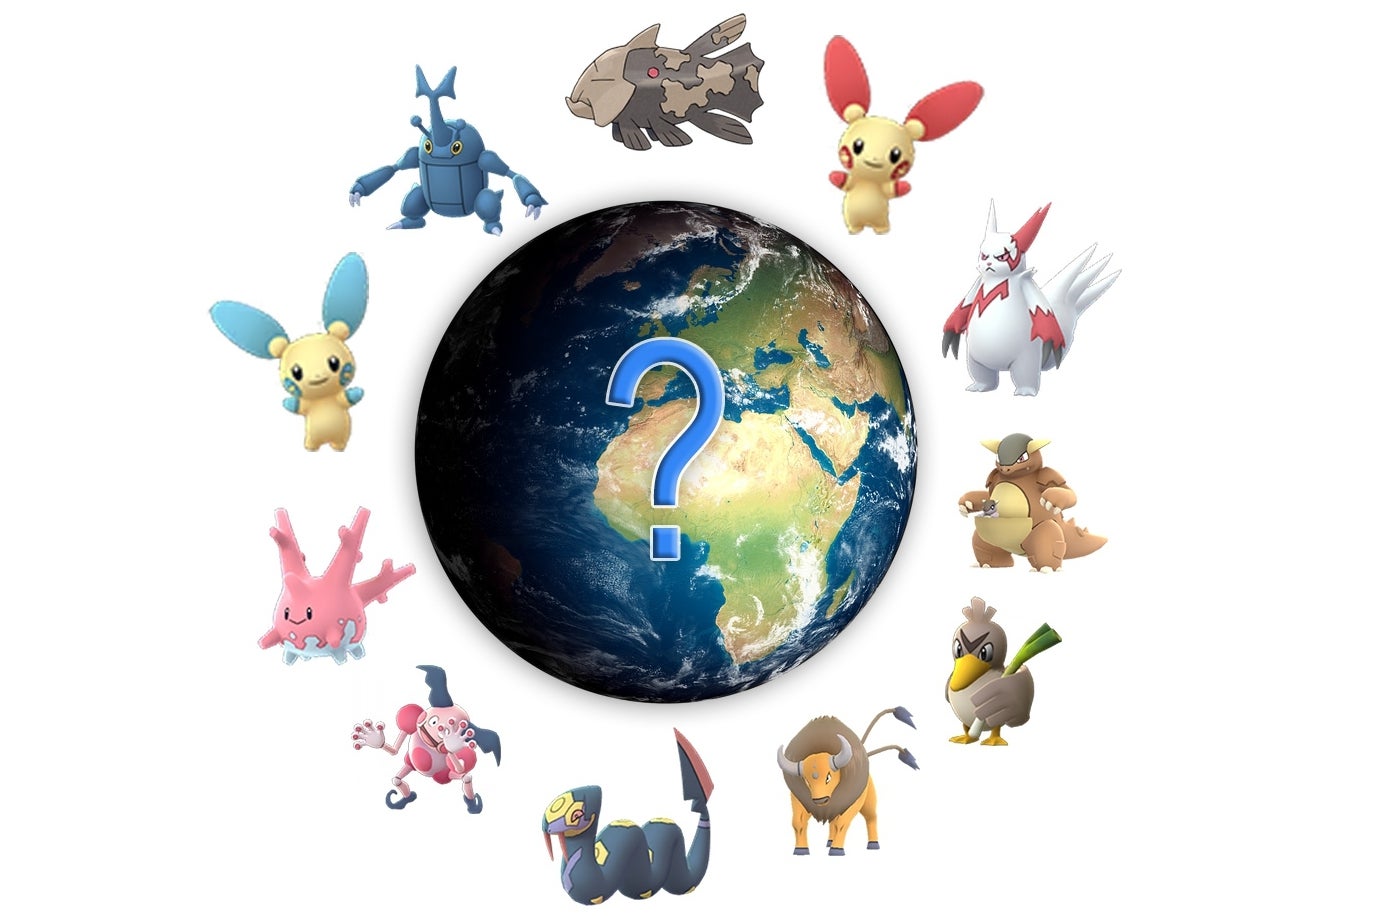 Afbeeldingen van Pokémon Go regionaal exclusieve lijst voor 2022 en hun locaties uitgelegd